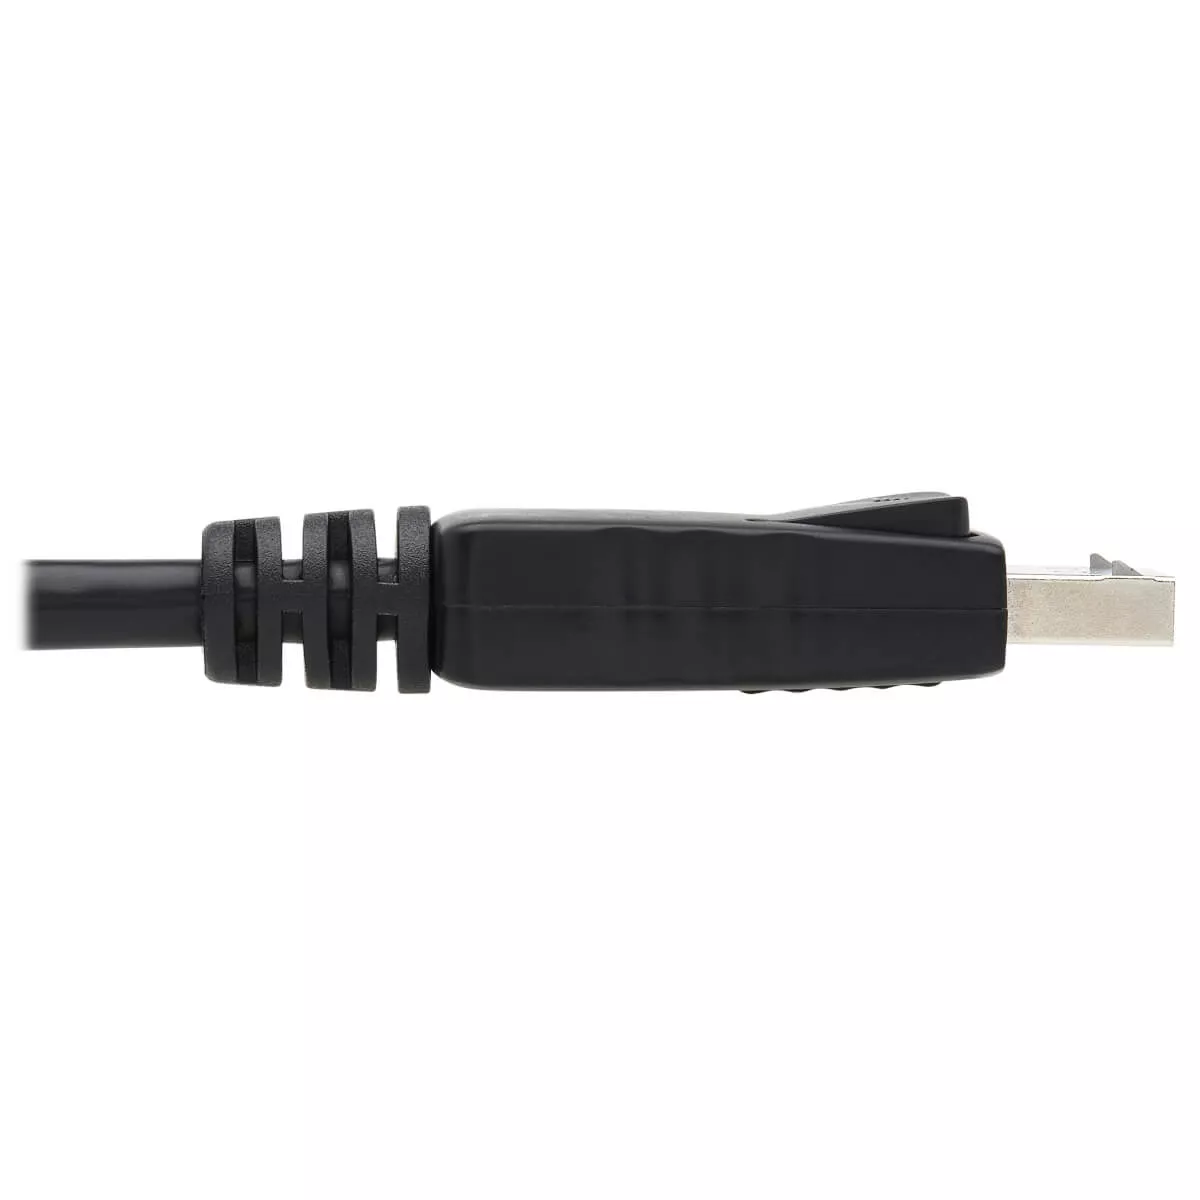 Vente EATON TRIPPLITE DisplayPort Cable with Latches 4K 60Hz Tripp Lite au meilleur prix - visuel 4